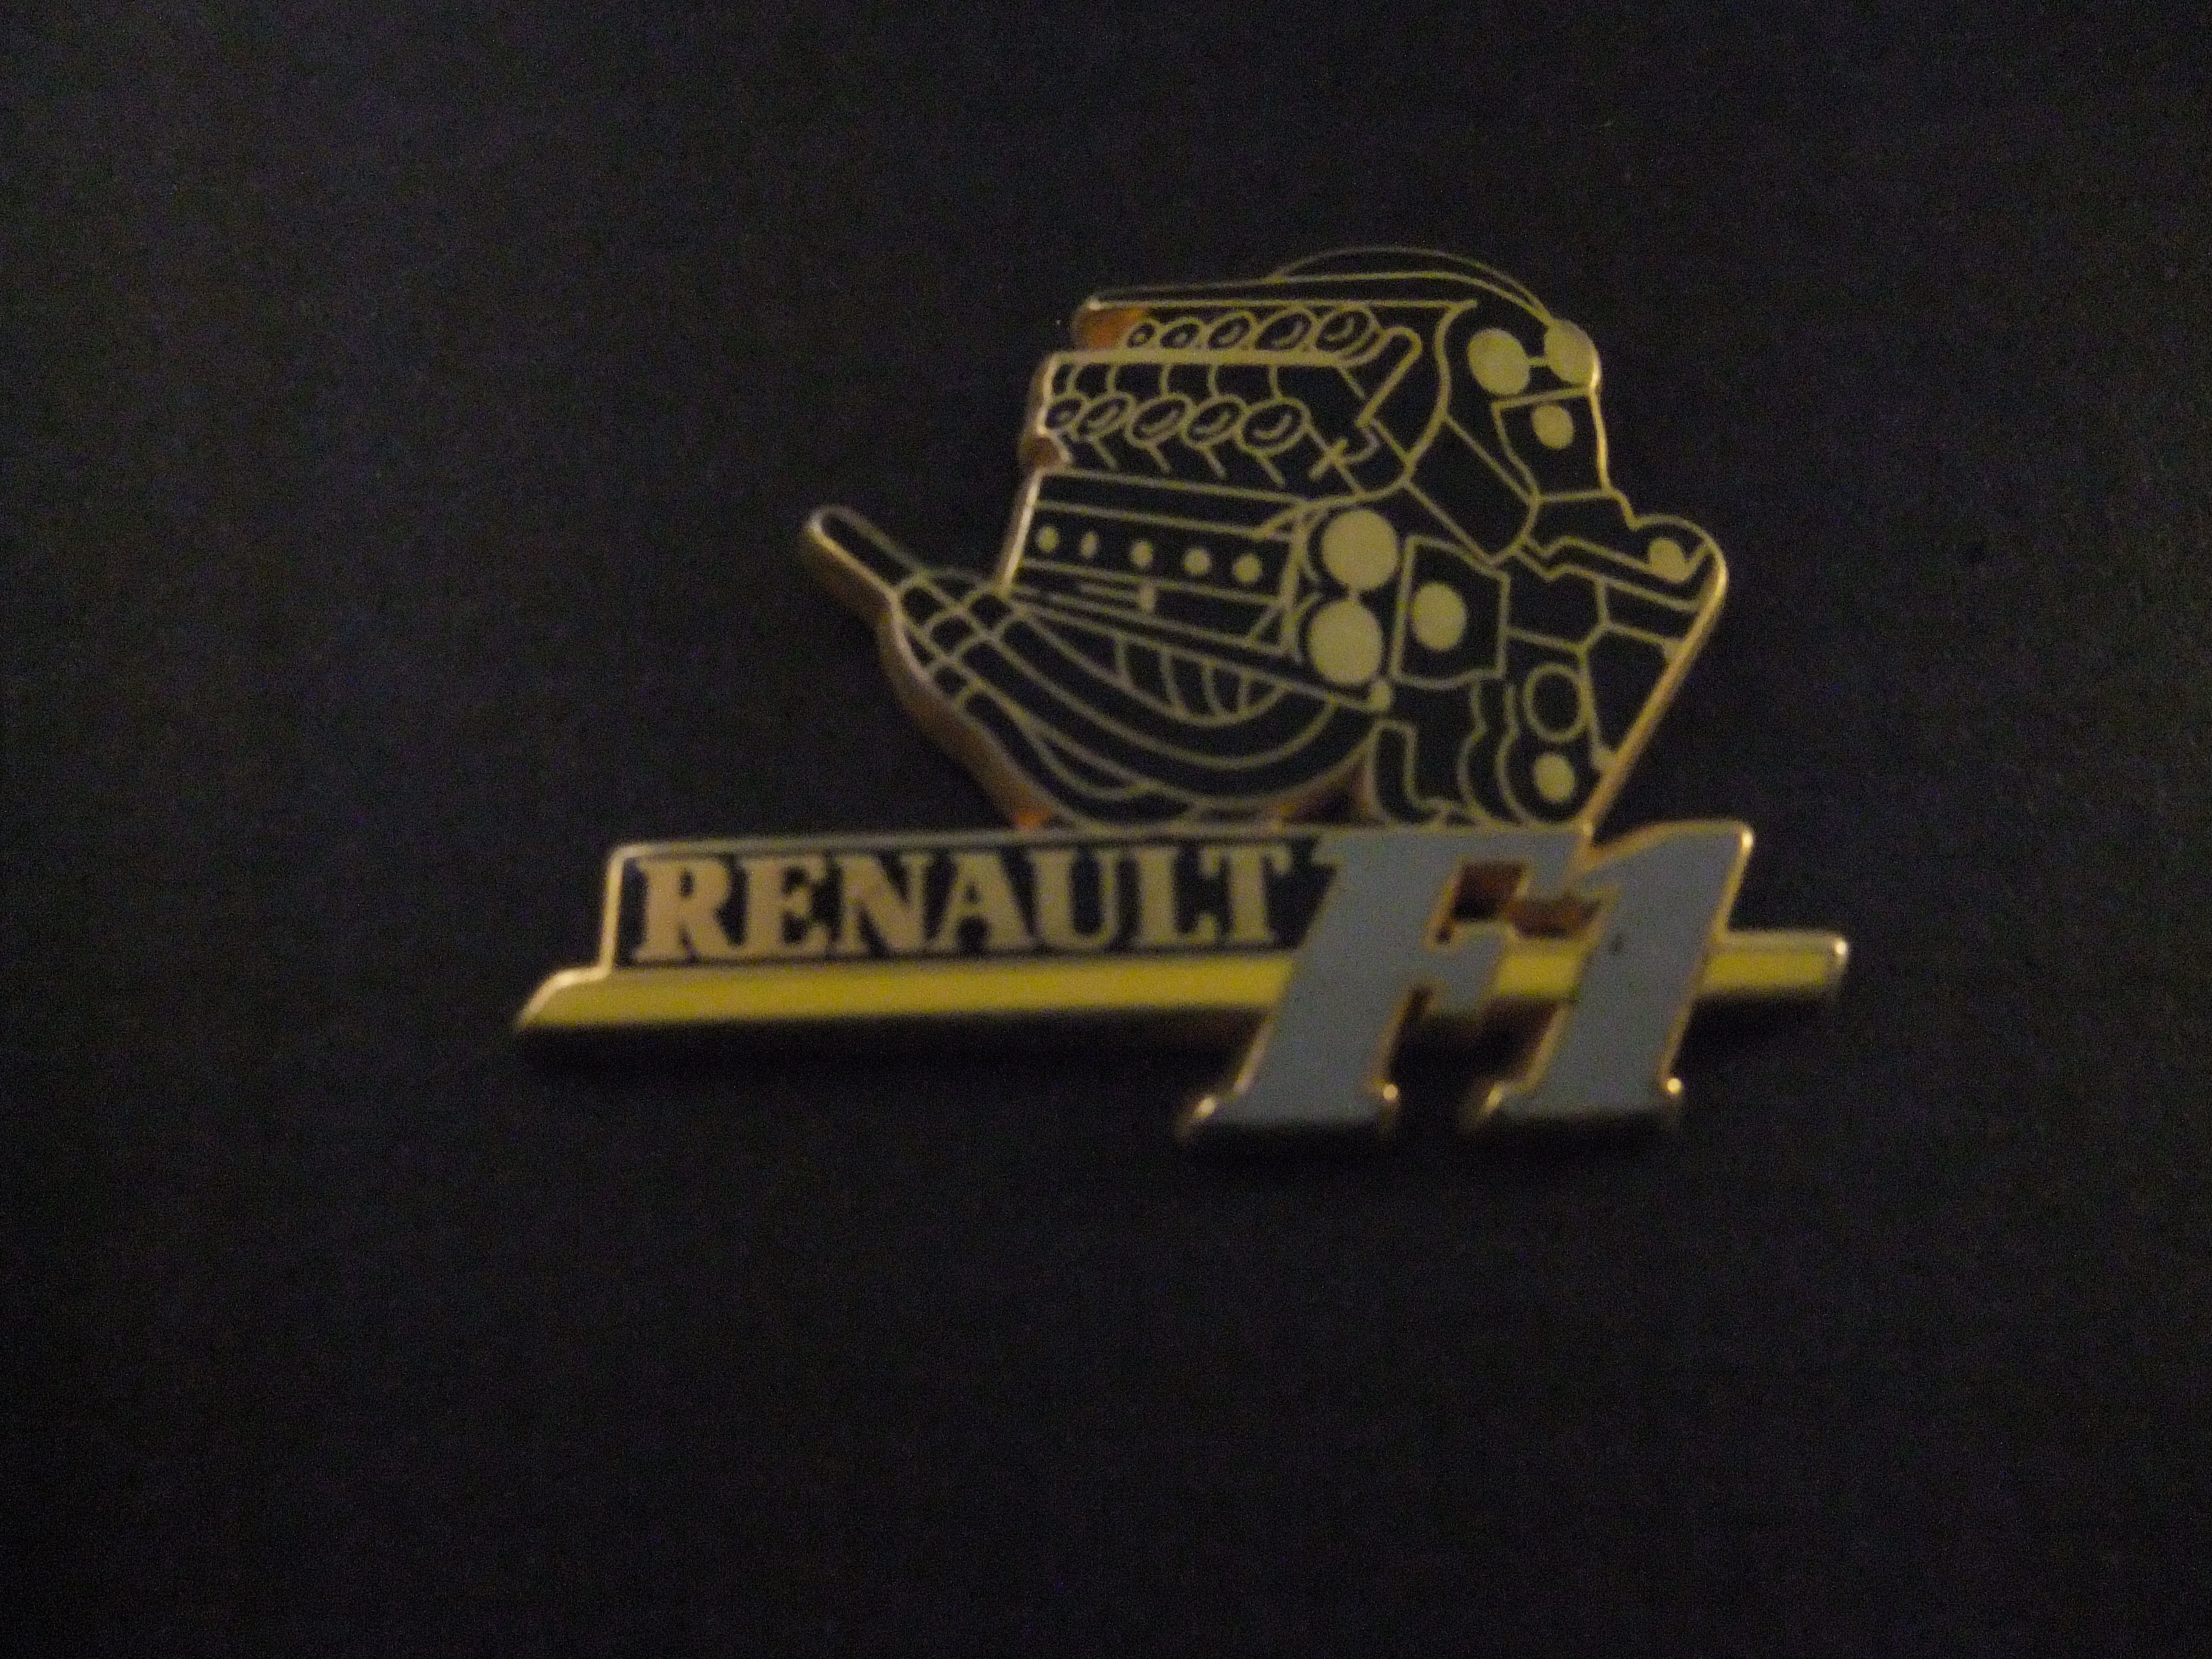 Renault Formule 1 ( motor van de auto )